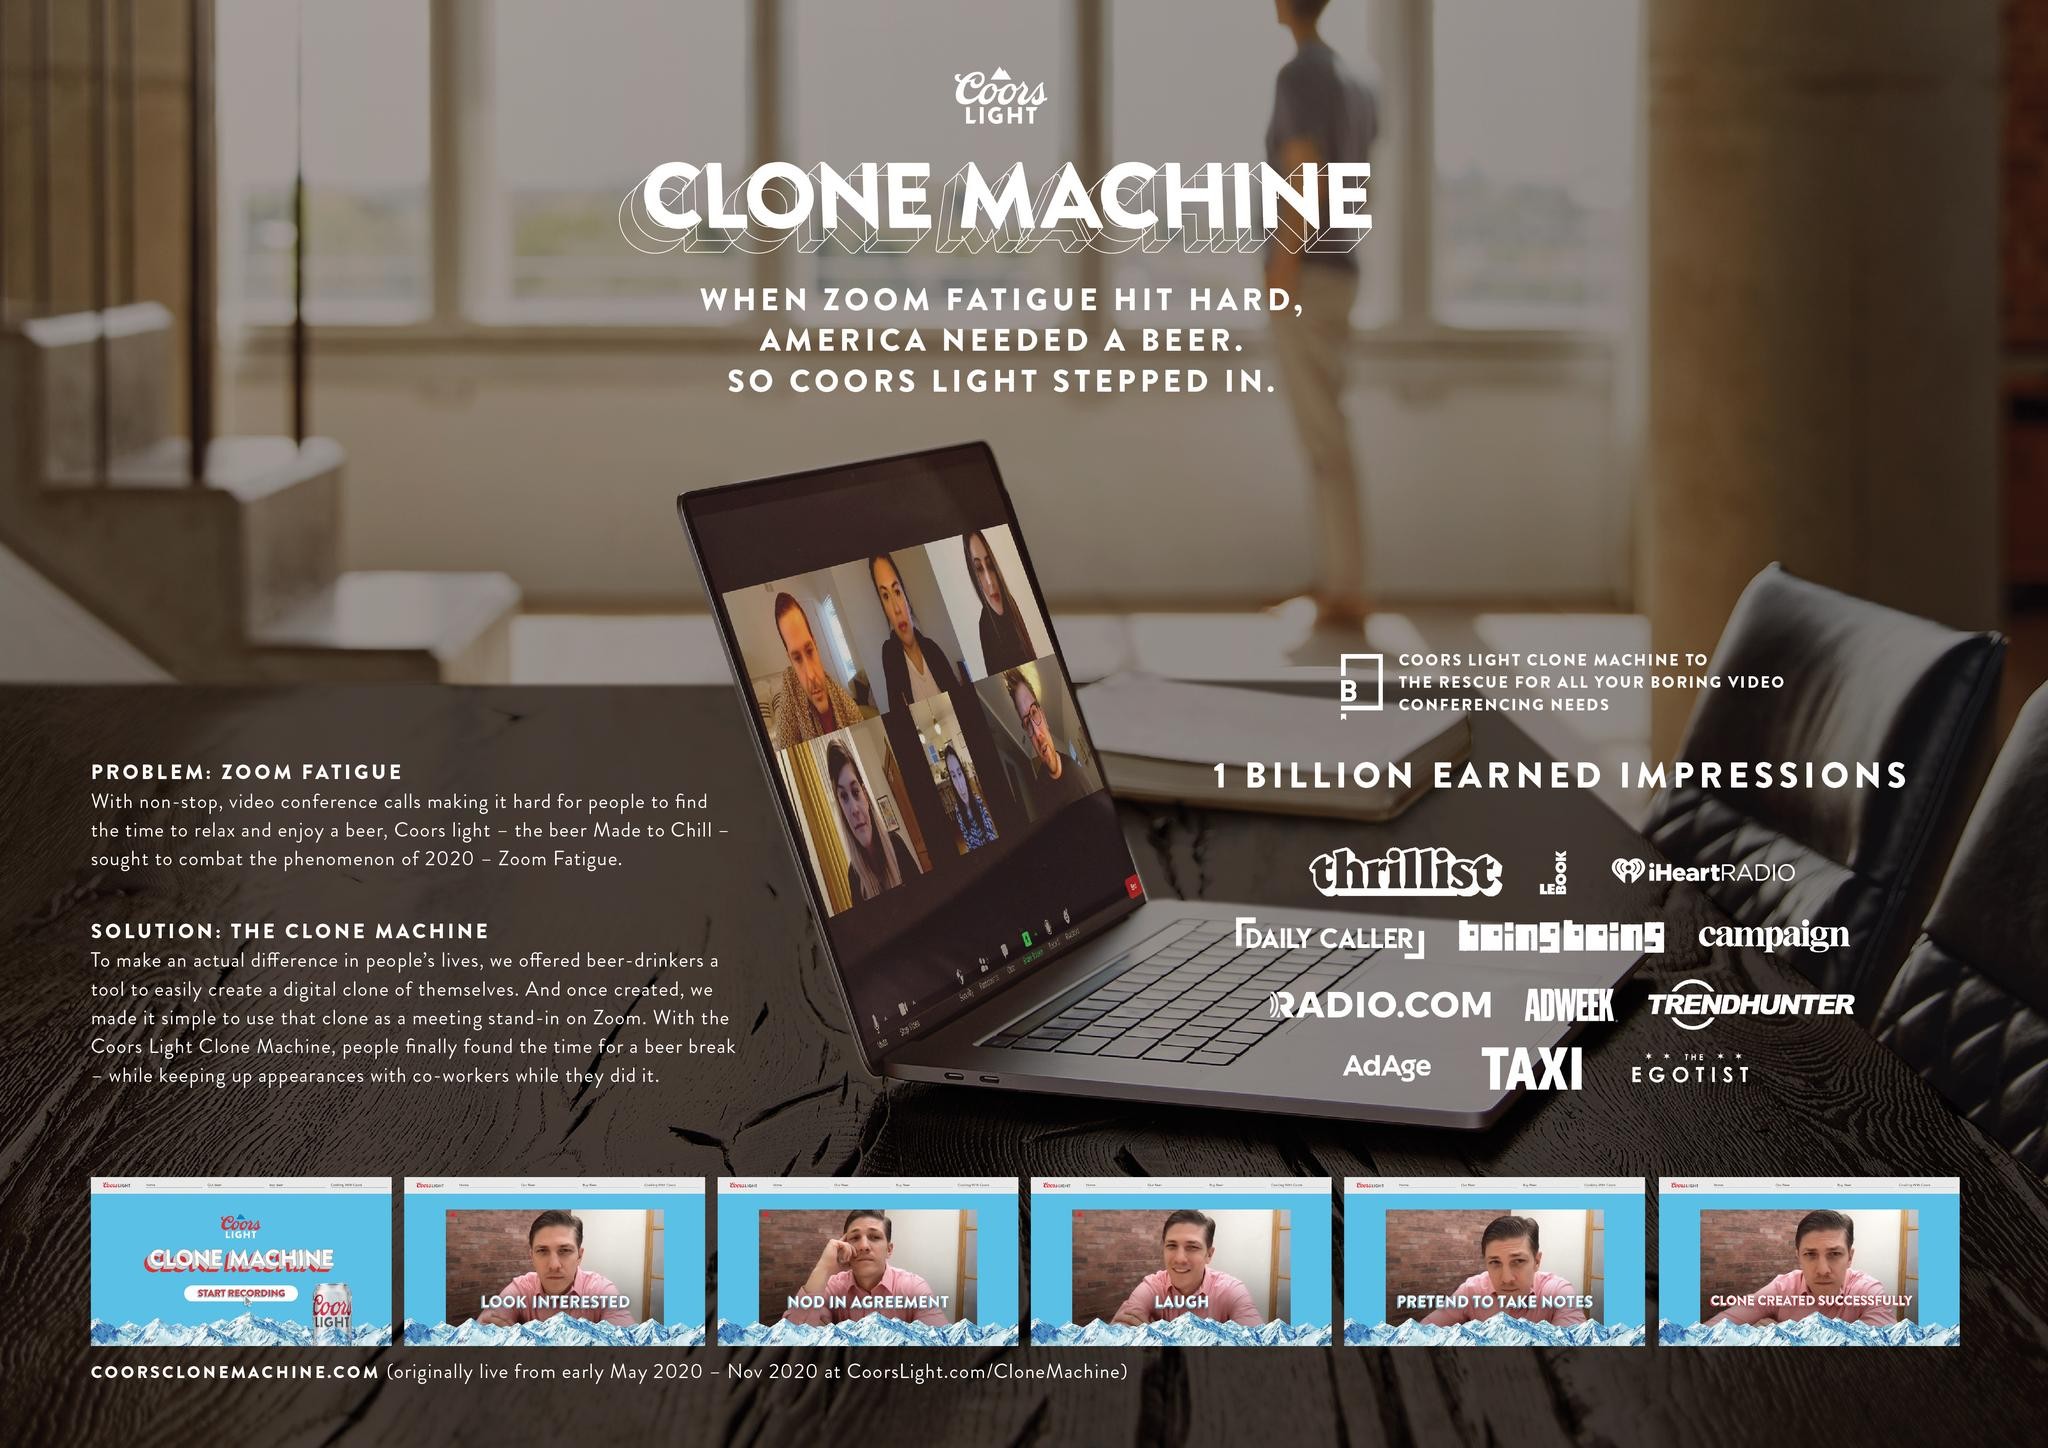 Clone Machine